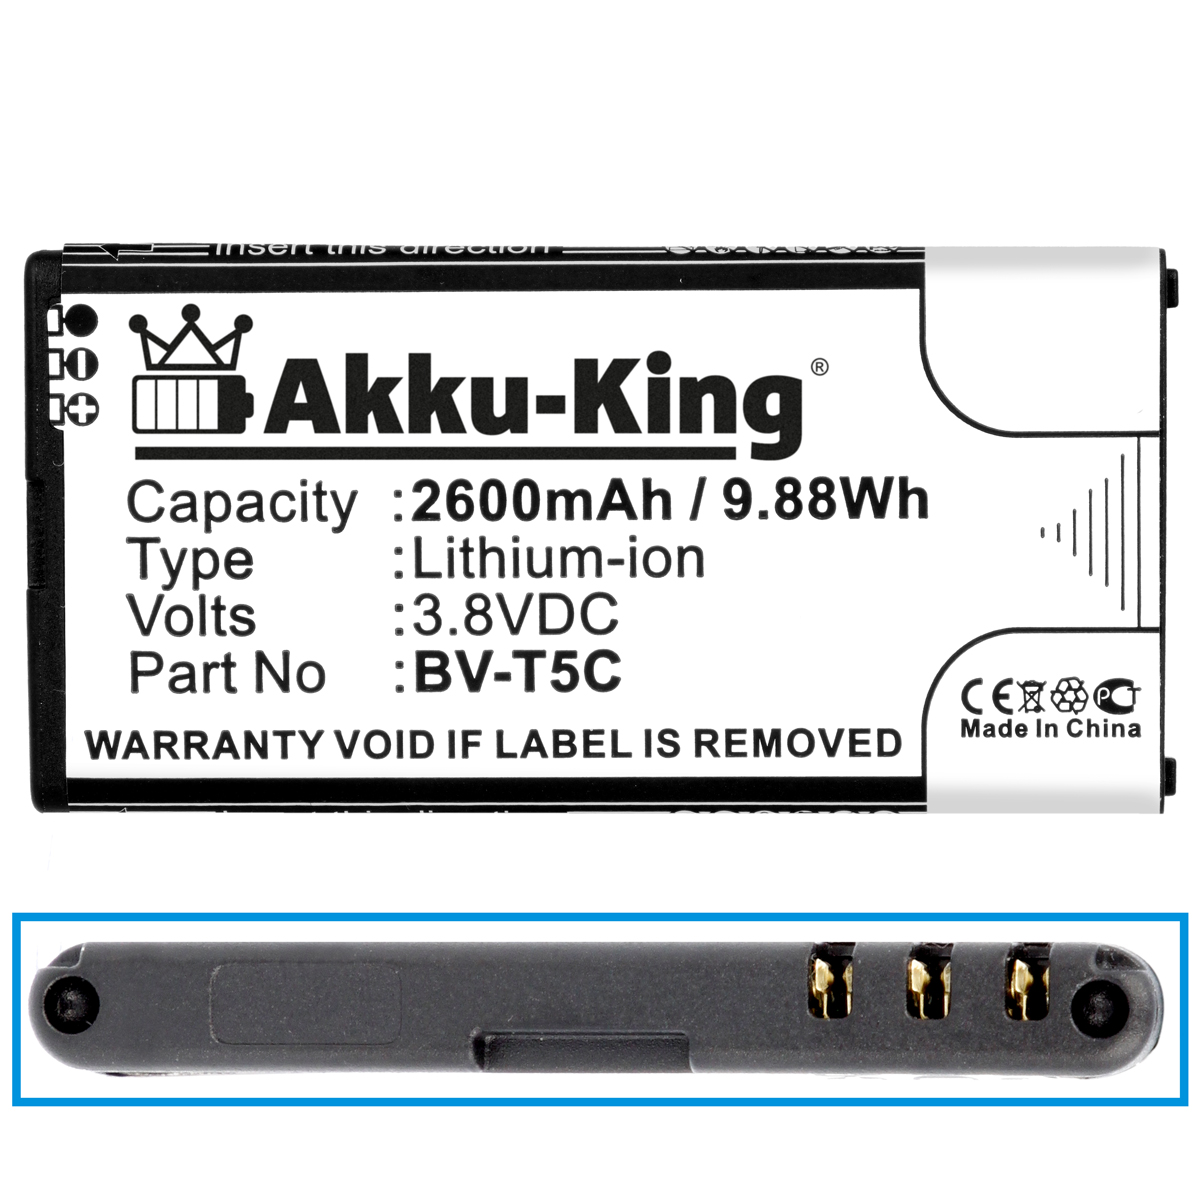 Li-Ion Akku mit kompatibel Handy-Akku, Nokia BV-T5C Volt, 3.8 2600mAh AKKU-KING